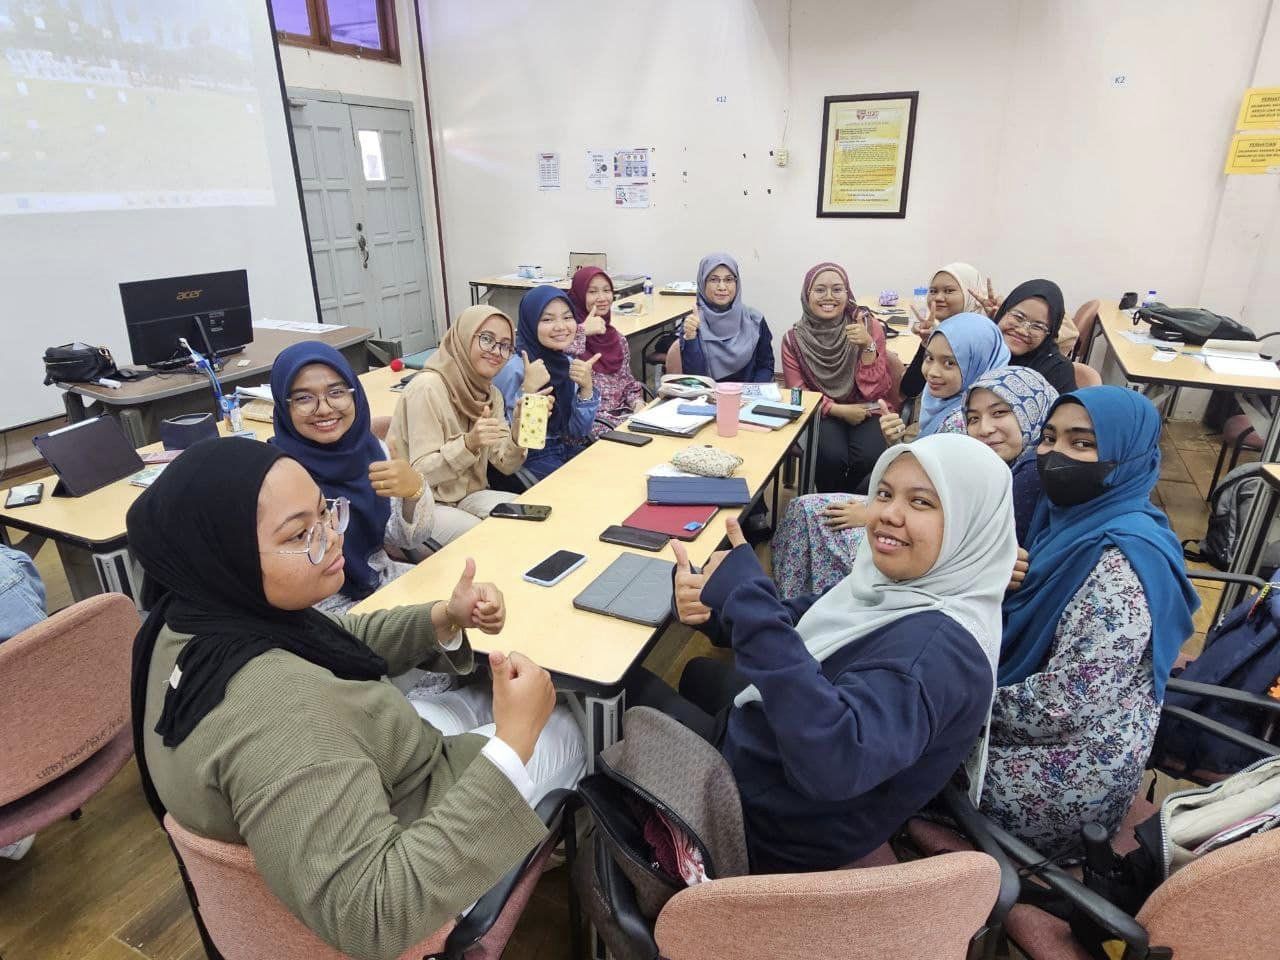 Kaunselor turun Padang untuk memberikan bimbingan kerjaya kepada pelajar Pusat Asasi, UPM.